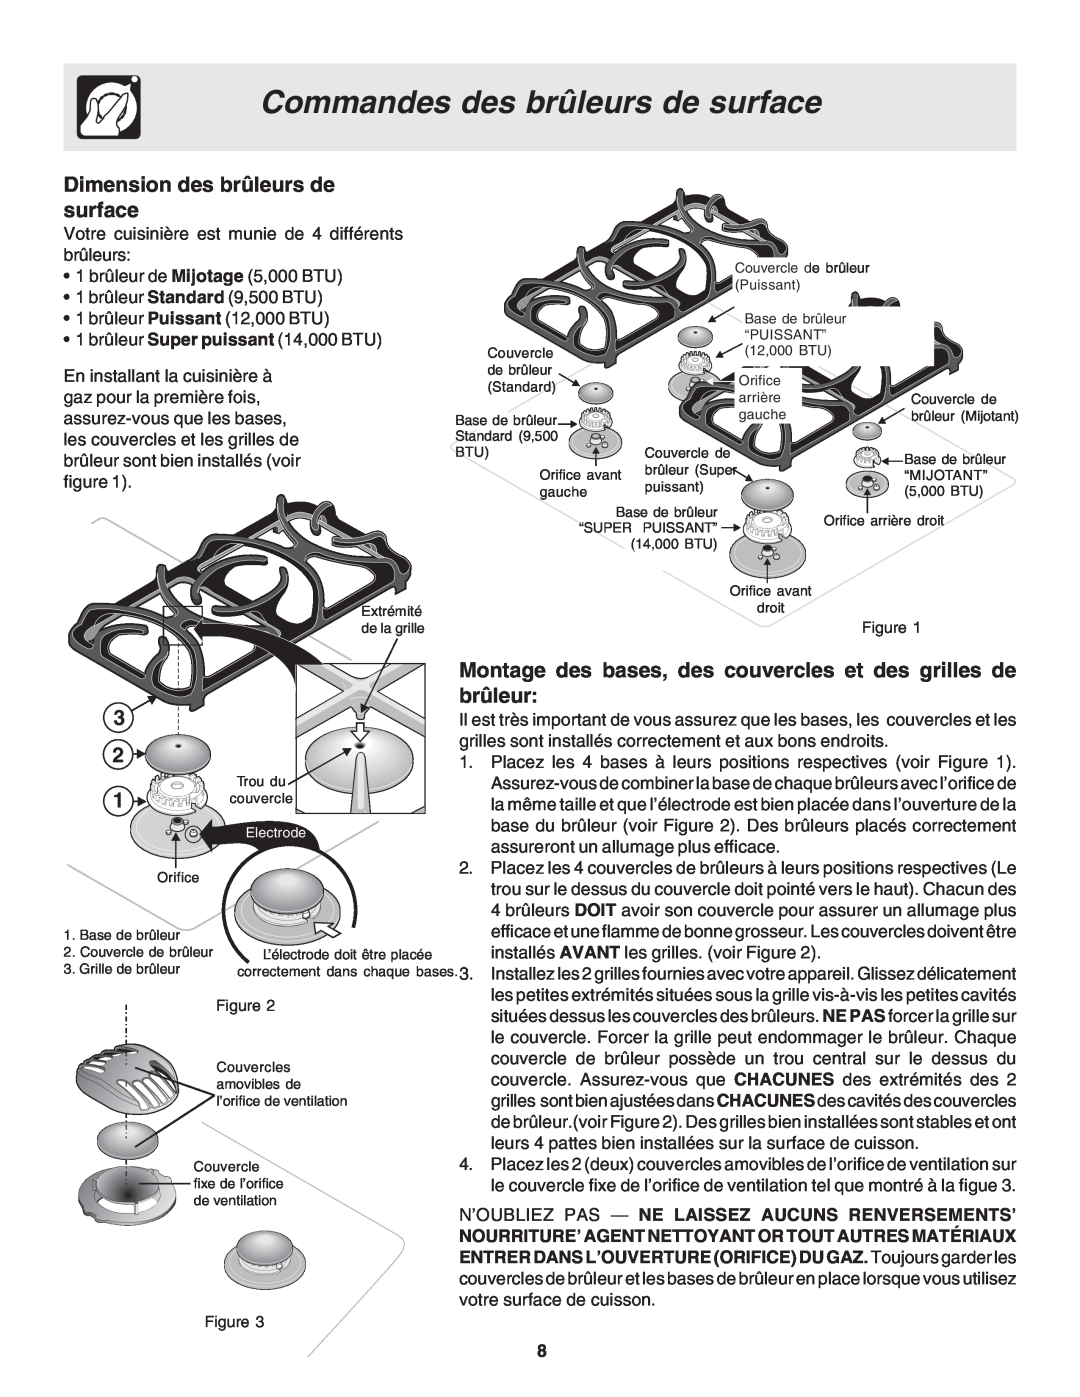 Frigidaire 318200879 manual Commandes des brûleurs de surface, Dimension des brûleurs de surface 